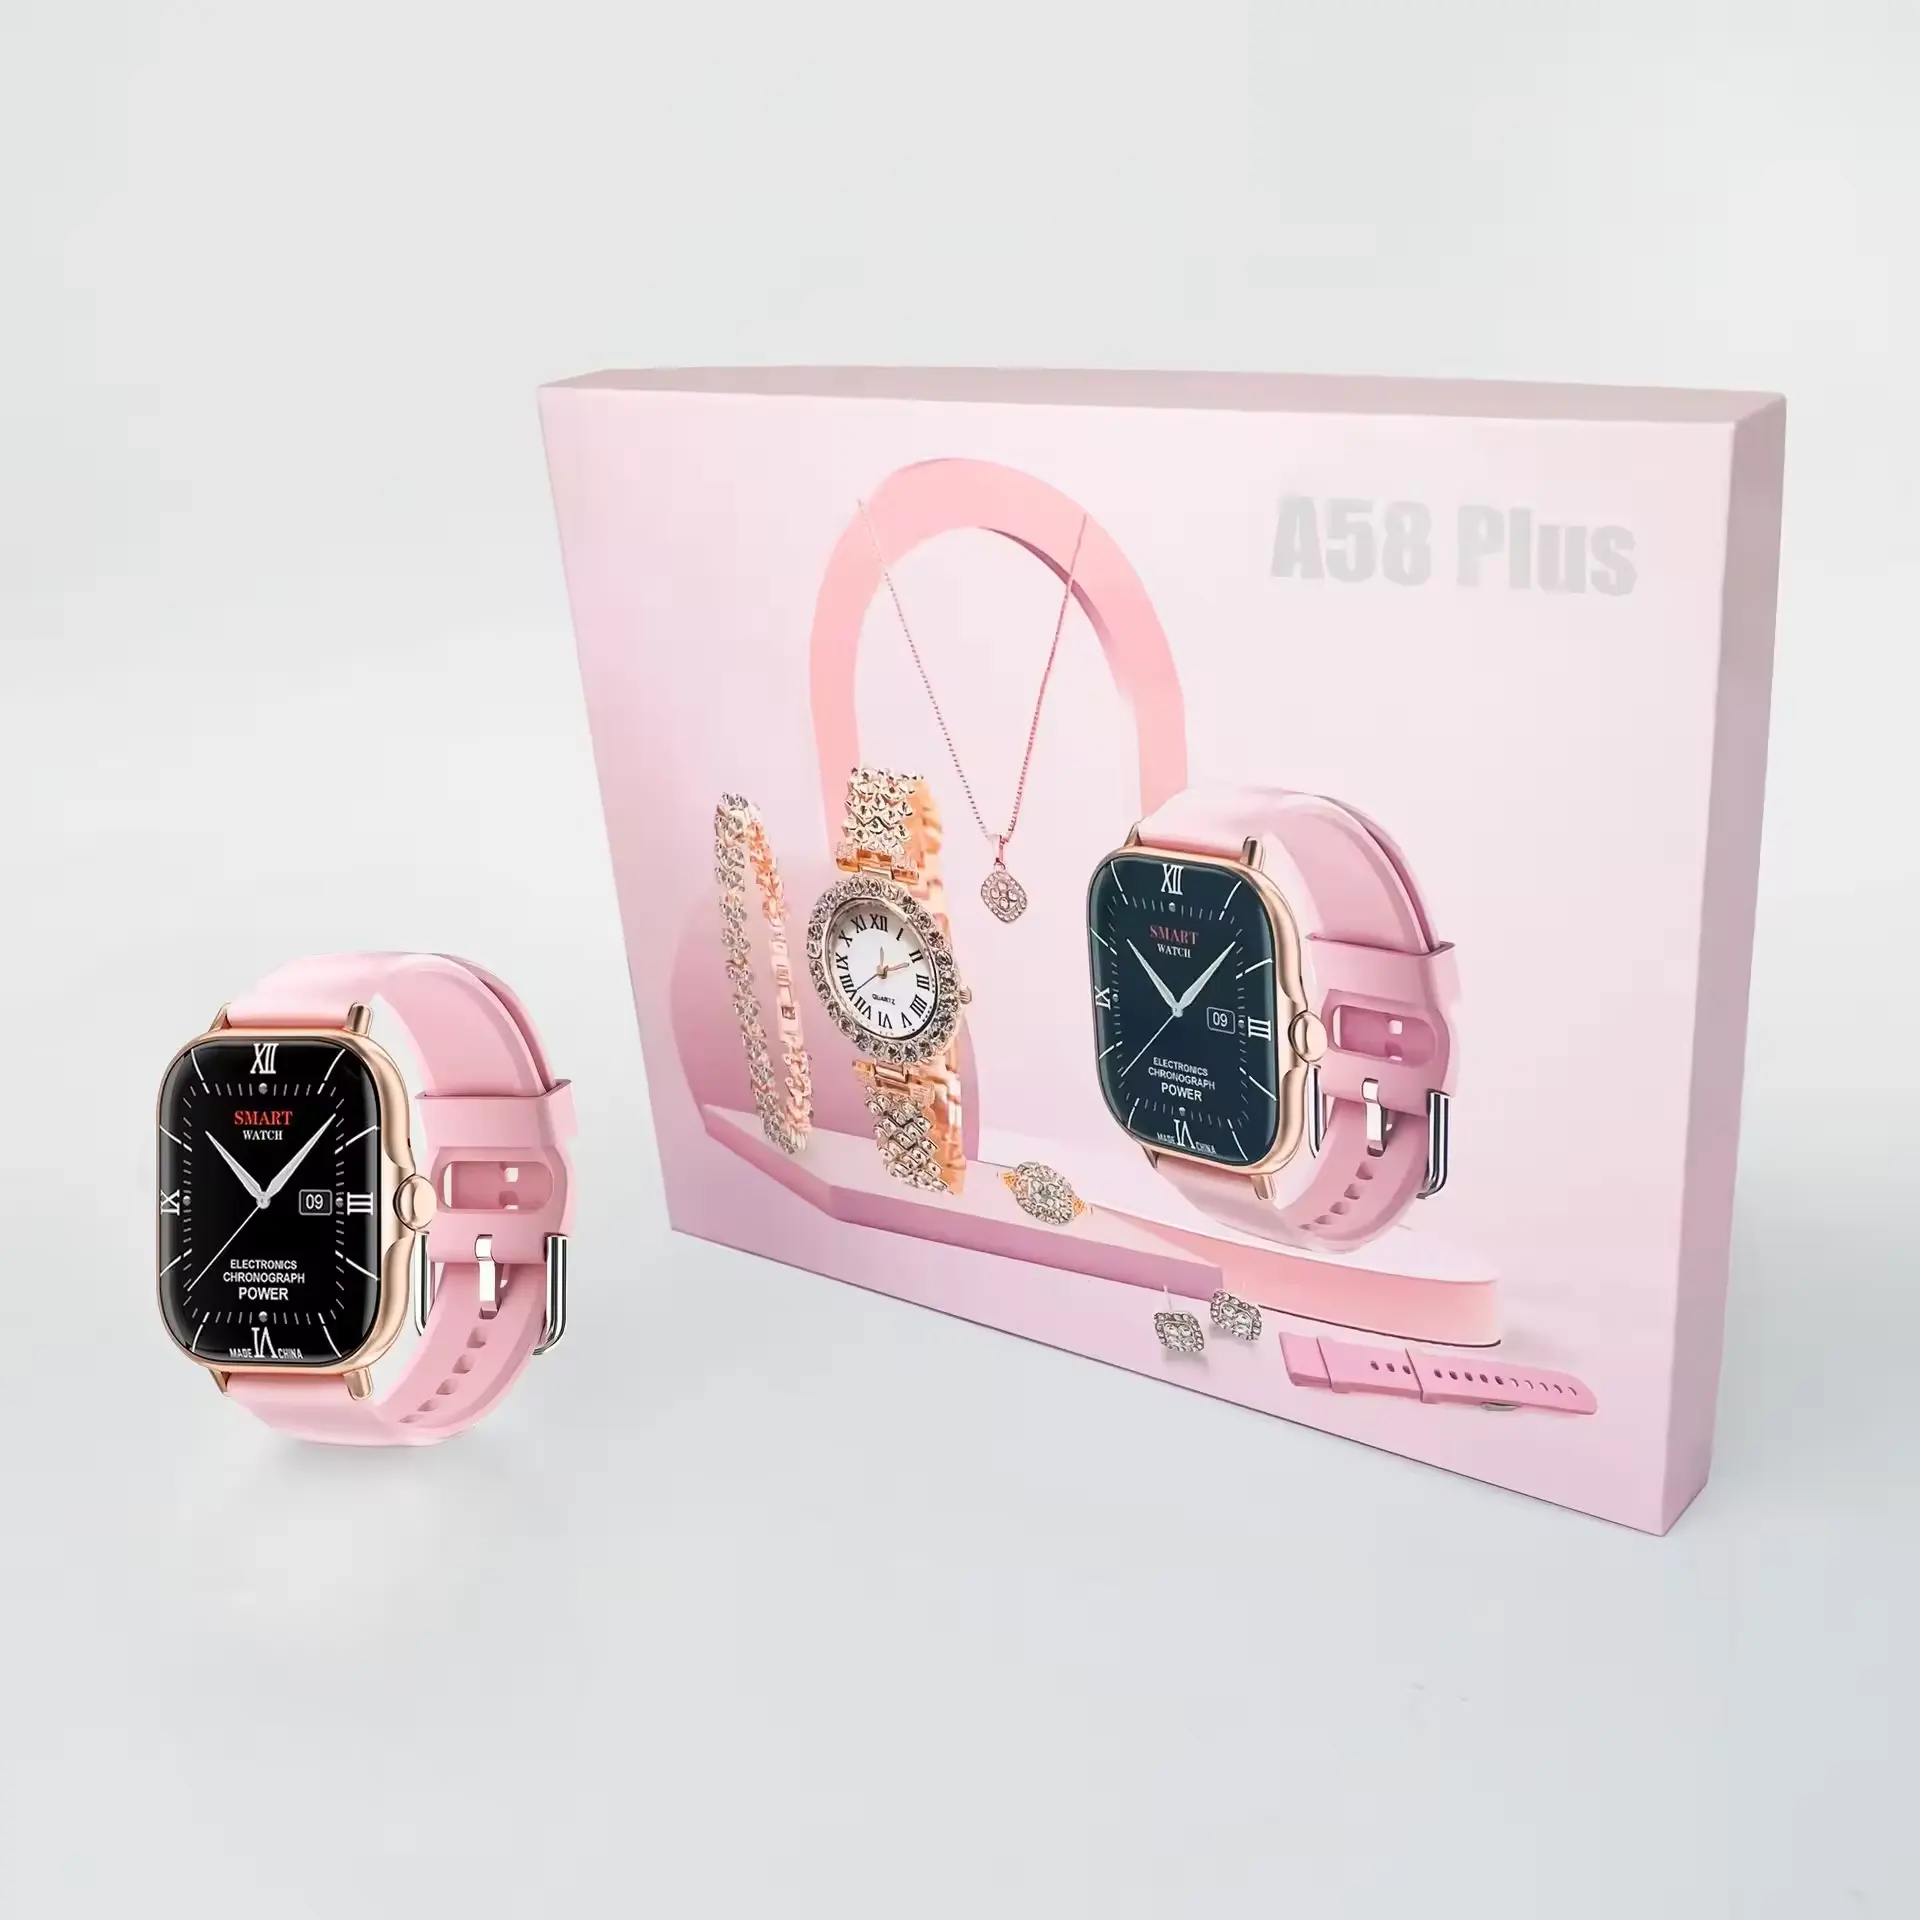 2024 conjunto de relógio inteligente para mulheres A58 PLUS 8 em 1 2 pulseira anel brinco fitpro tela sensível ao toque rastreador fitness relógio inteligente feminino